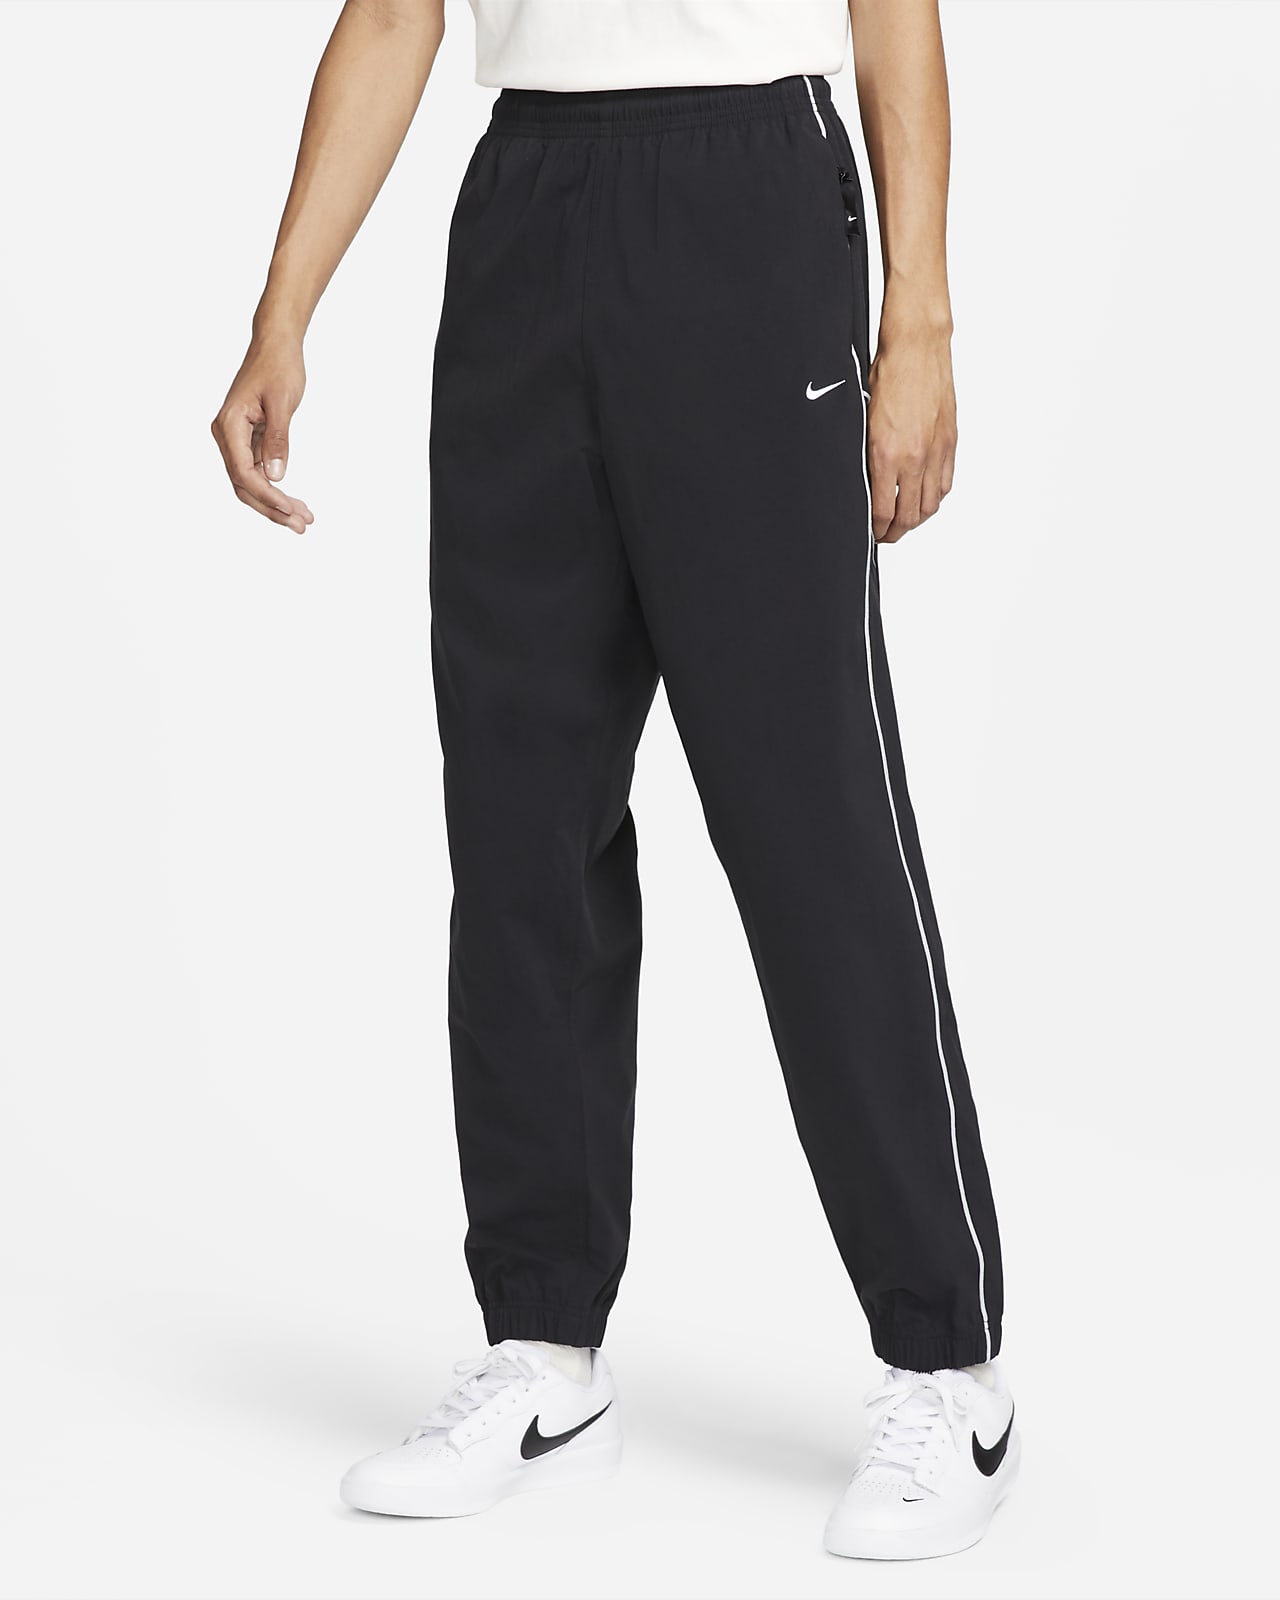 Nike Sportswear Woven Trousers. Nike NZ